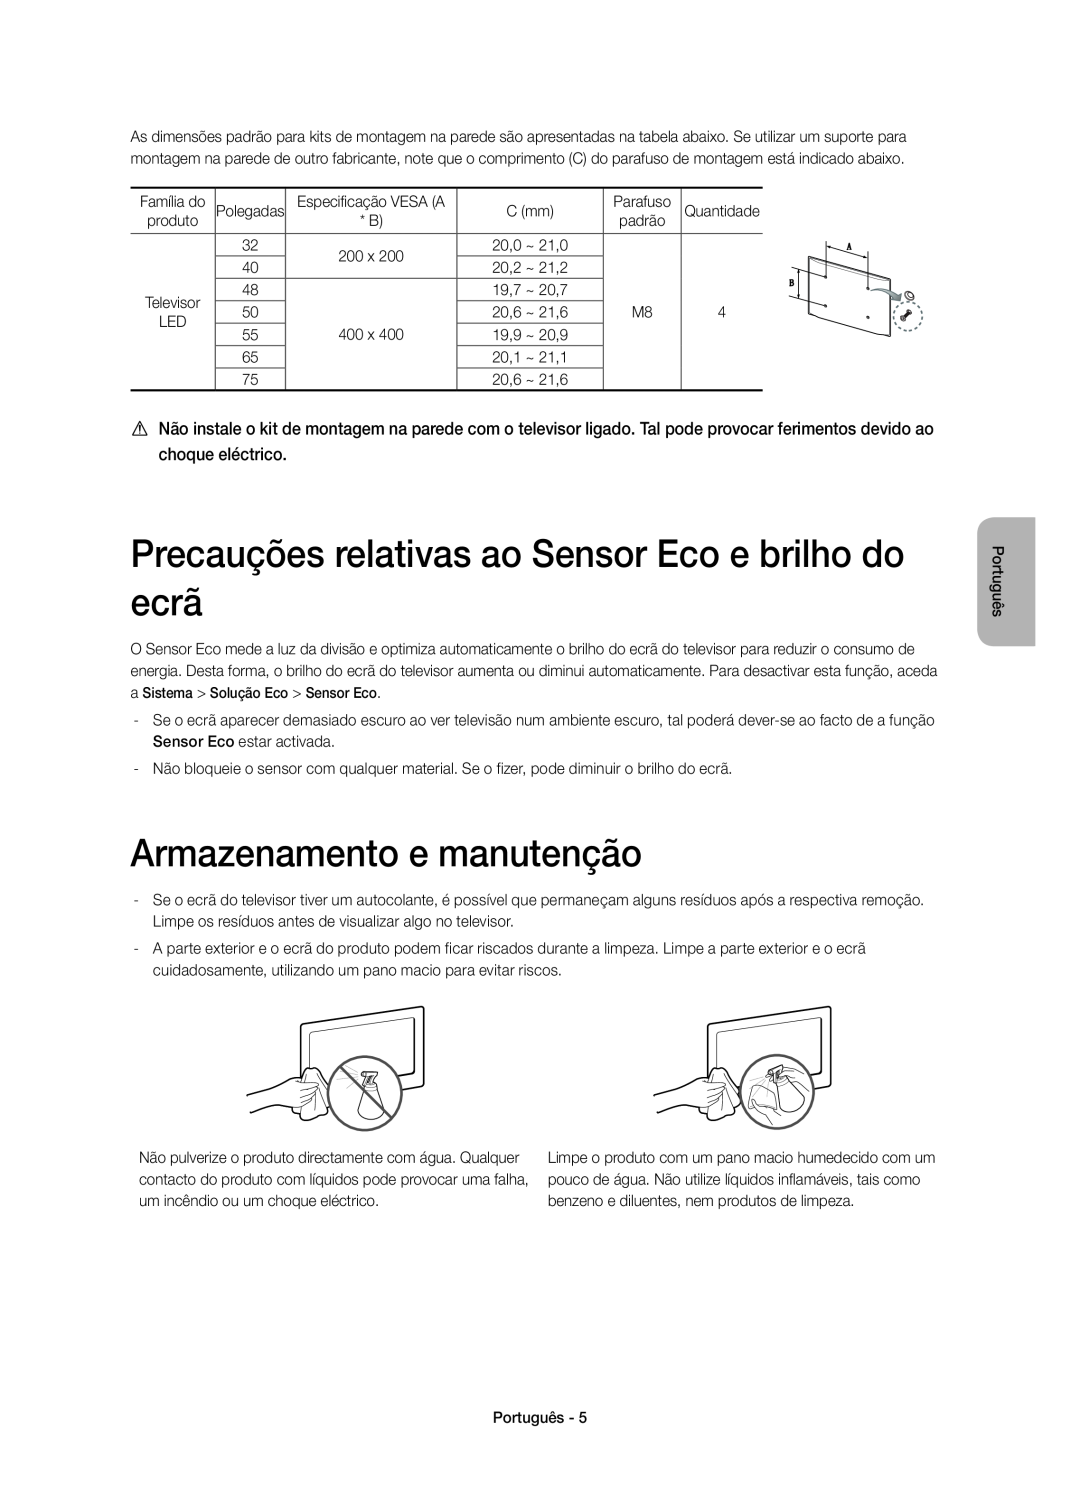 Samsung UE75H6400AWXXC manual Precauções relativas ao Sensor Eco e brilho do ecrã, Armazenamento e manutenção, Televisor 